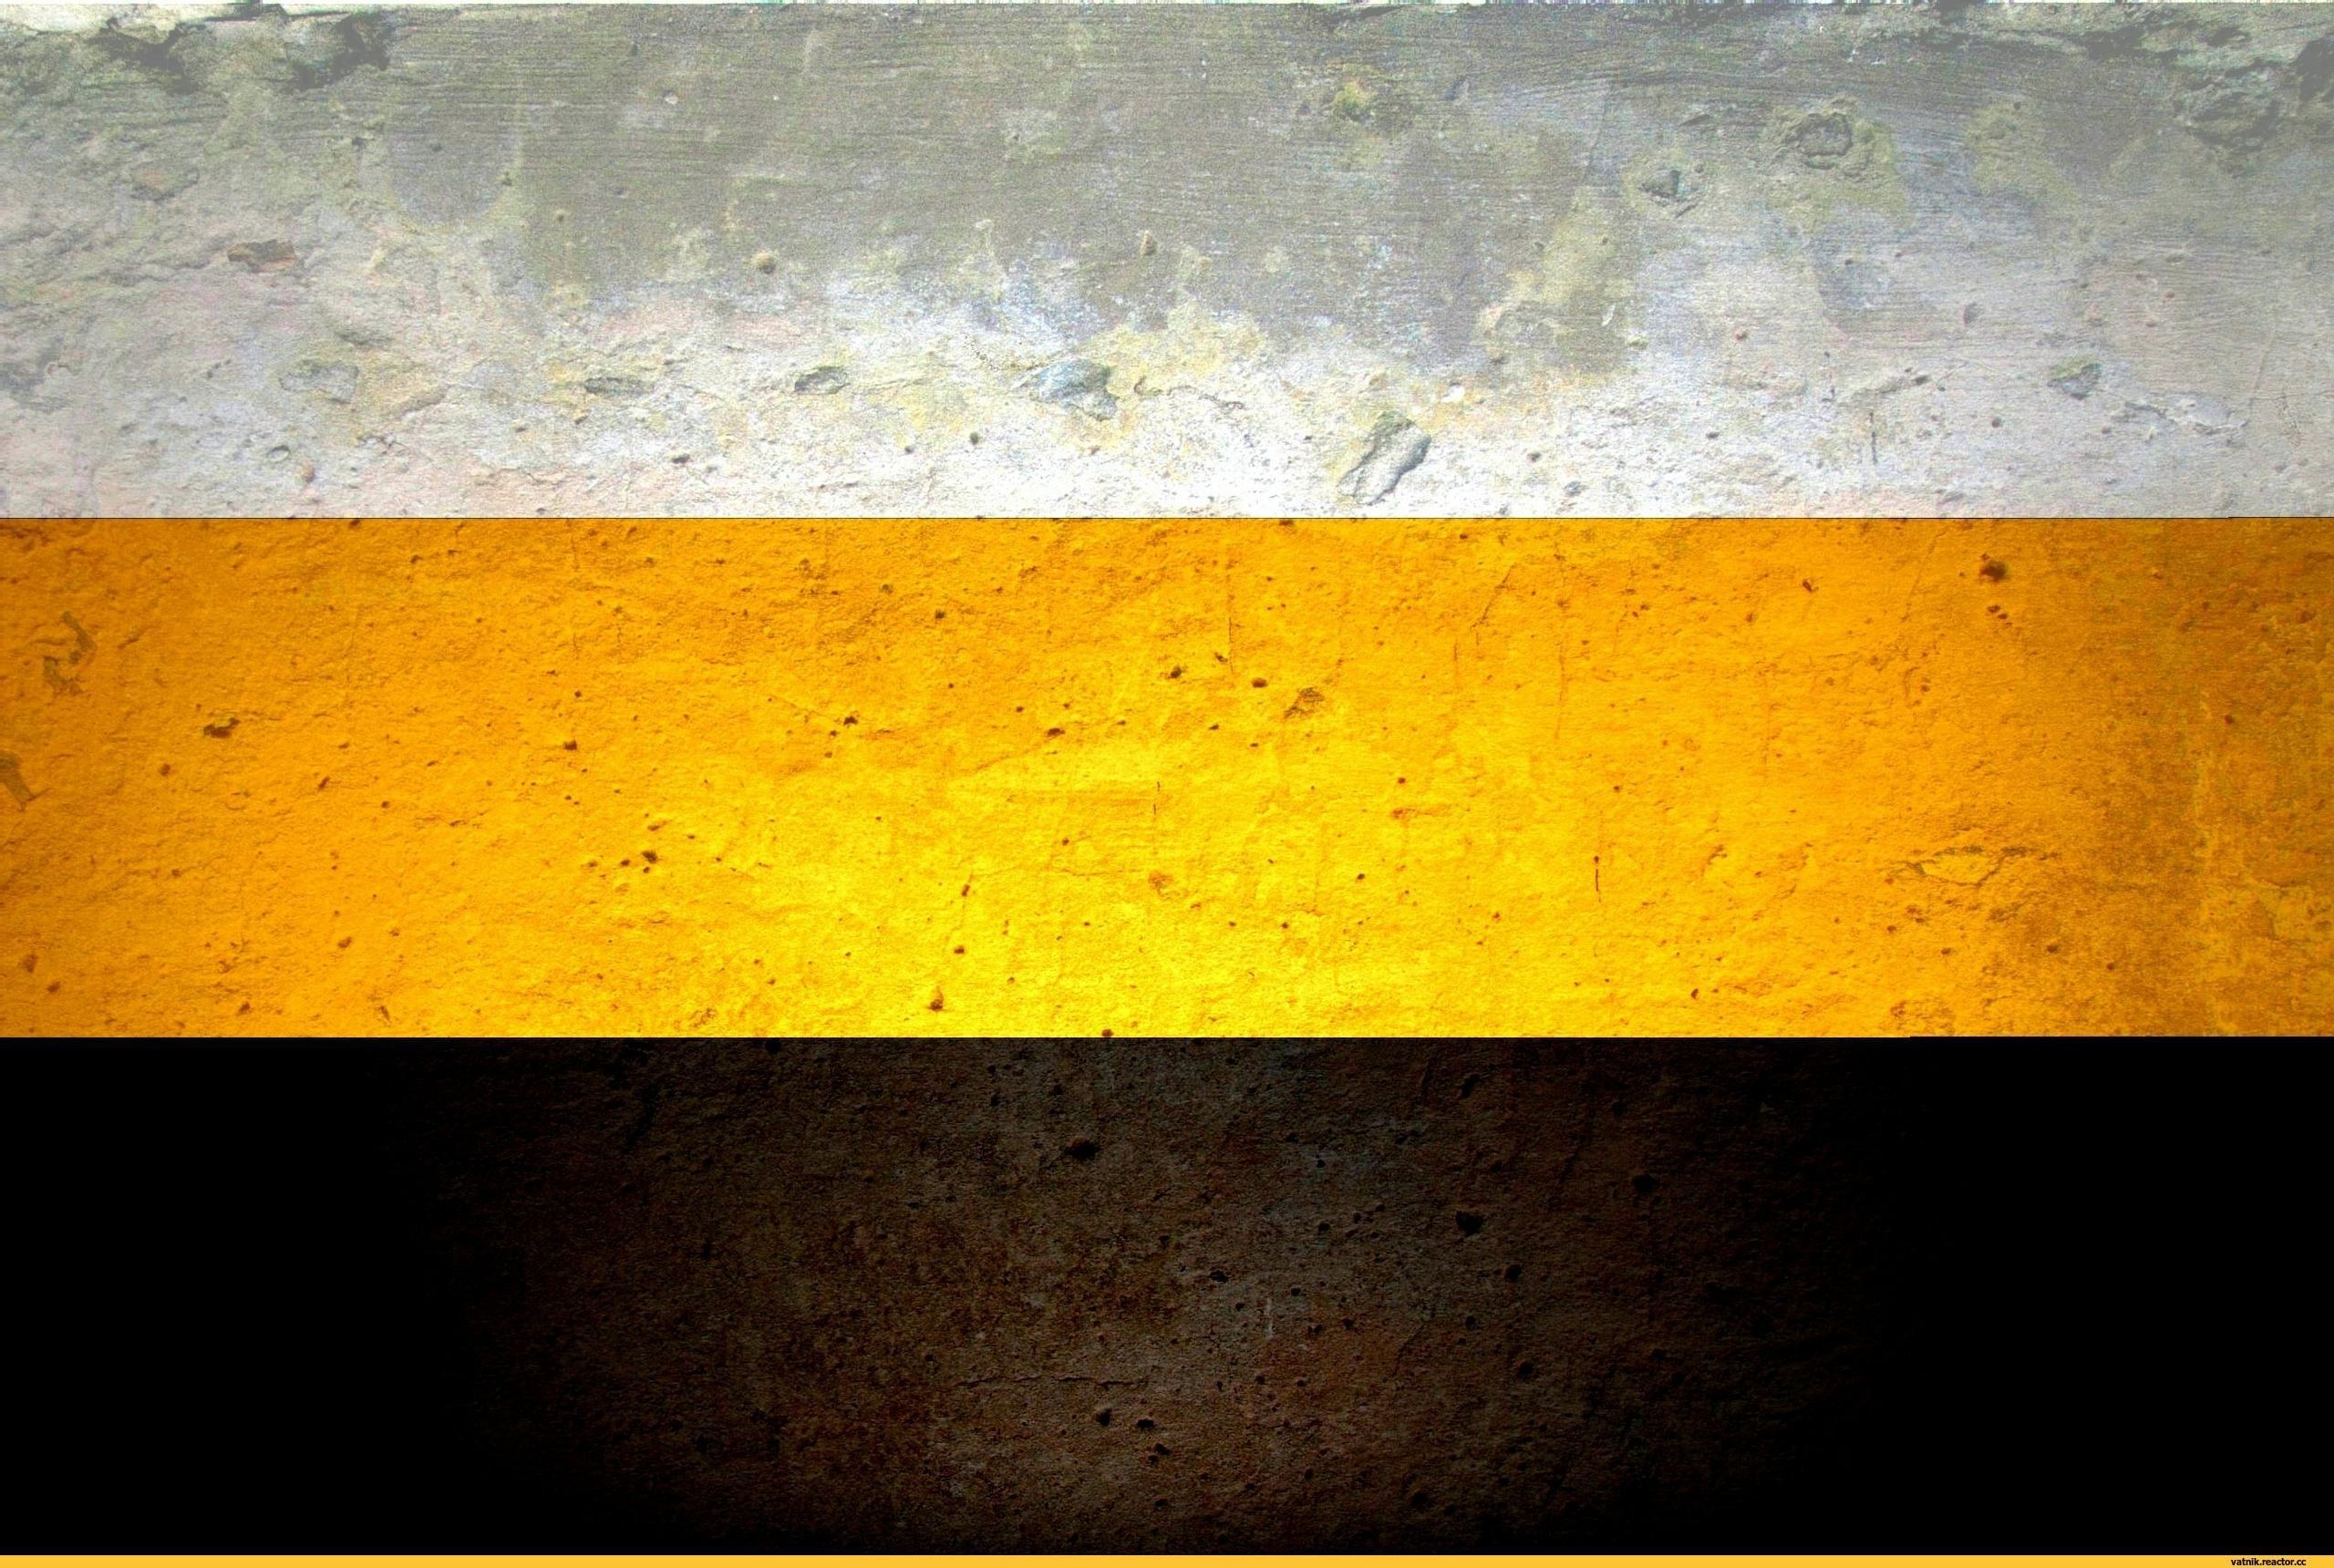 Флаг цвет черный желтый белый. Флаг Российской империи черно желто белый. Имперский флаг Российской империи бело желто черный. Флаг Российской империи (1858-1883). Флаг Российской империи 1858.